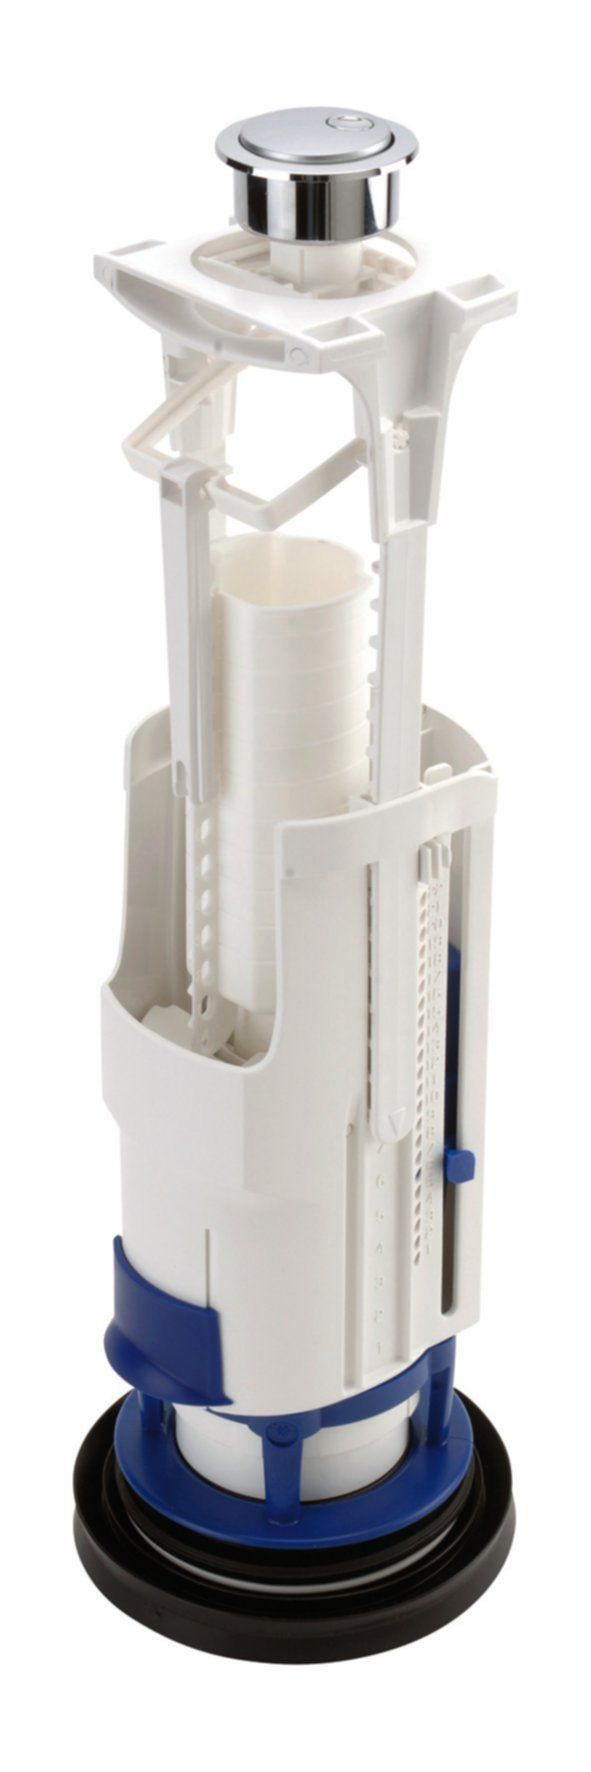 Meccanismo per WC a doppio volume a risparmio idrico con staffa, foro Ø 40 mm.